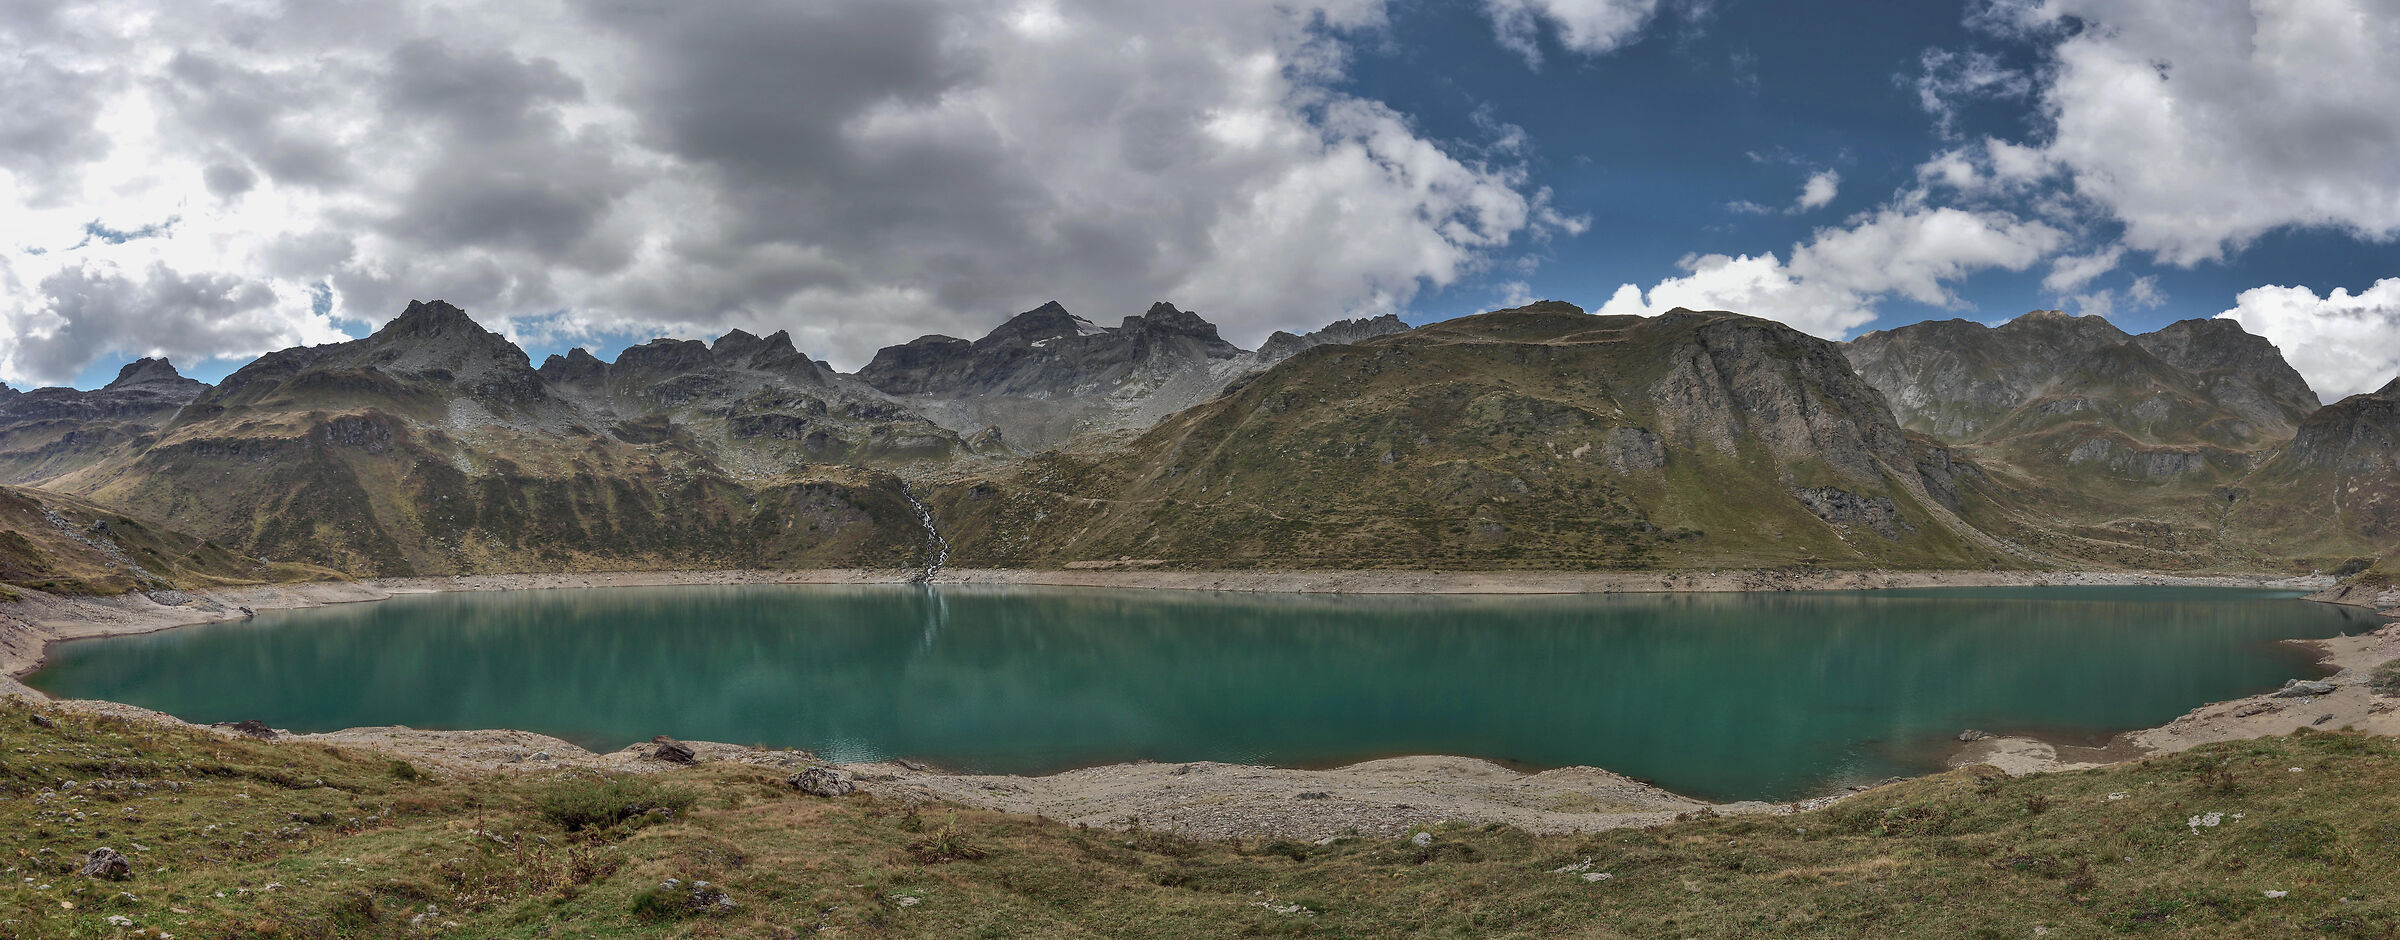 Upper Val Formazza-Canza-Upper Busin Lake...